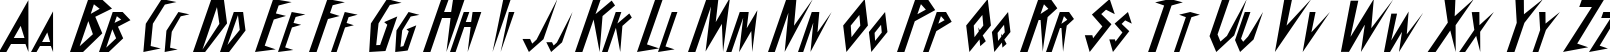 Пример написания английского алфавита шрифтом Schrill AOE Oblique